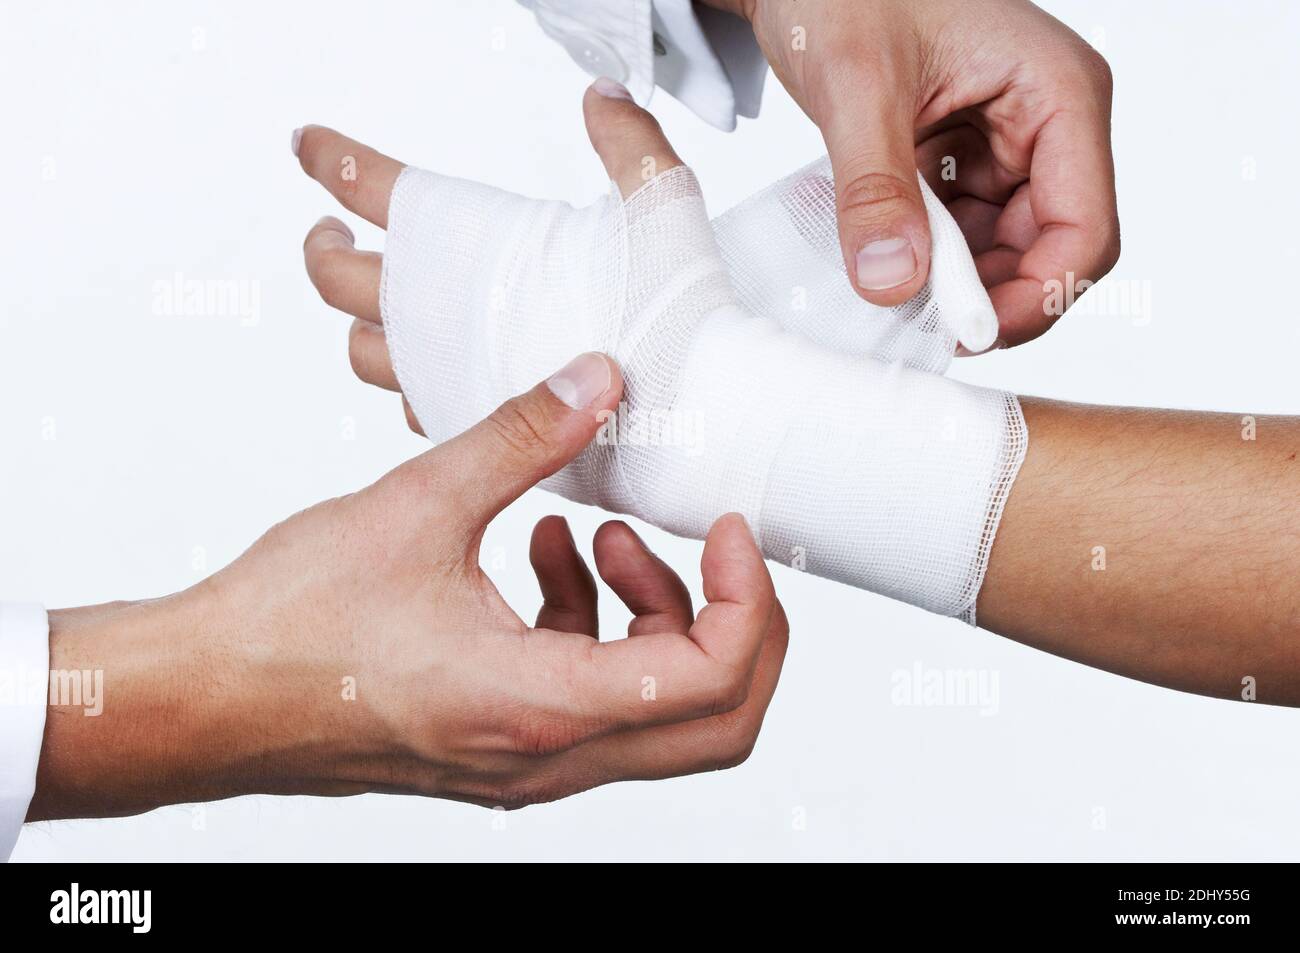 Arzt verbindet den Arm einer Patientin, Verband, Model Release, Stock Photo